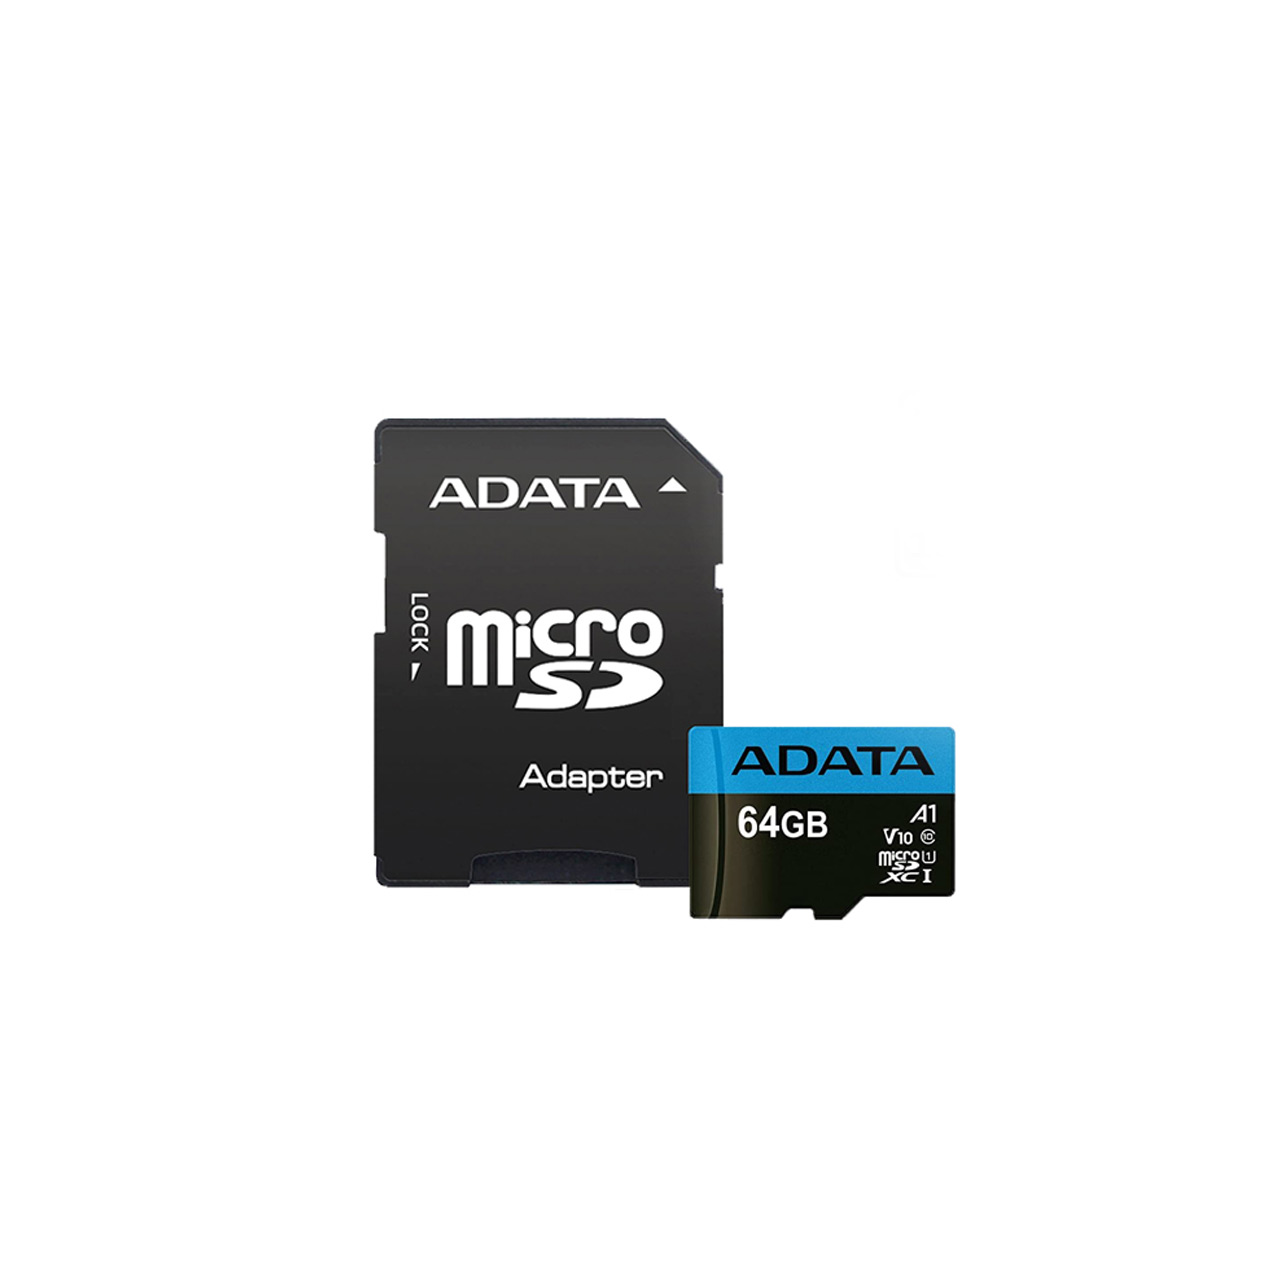 رم ADATA Premier microSDXC & adapter UHS-I U1 Class 10-100MB/s - 64GB